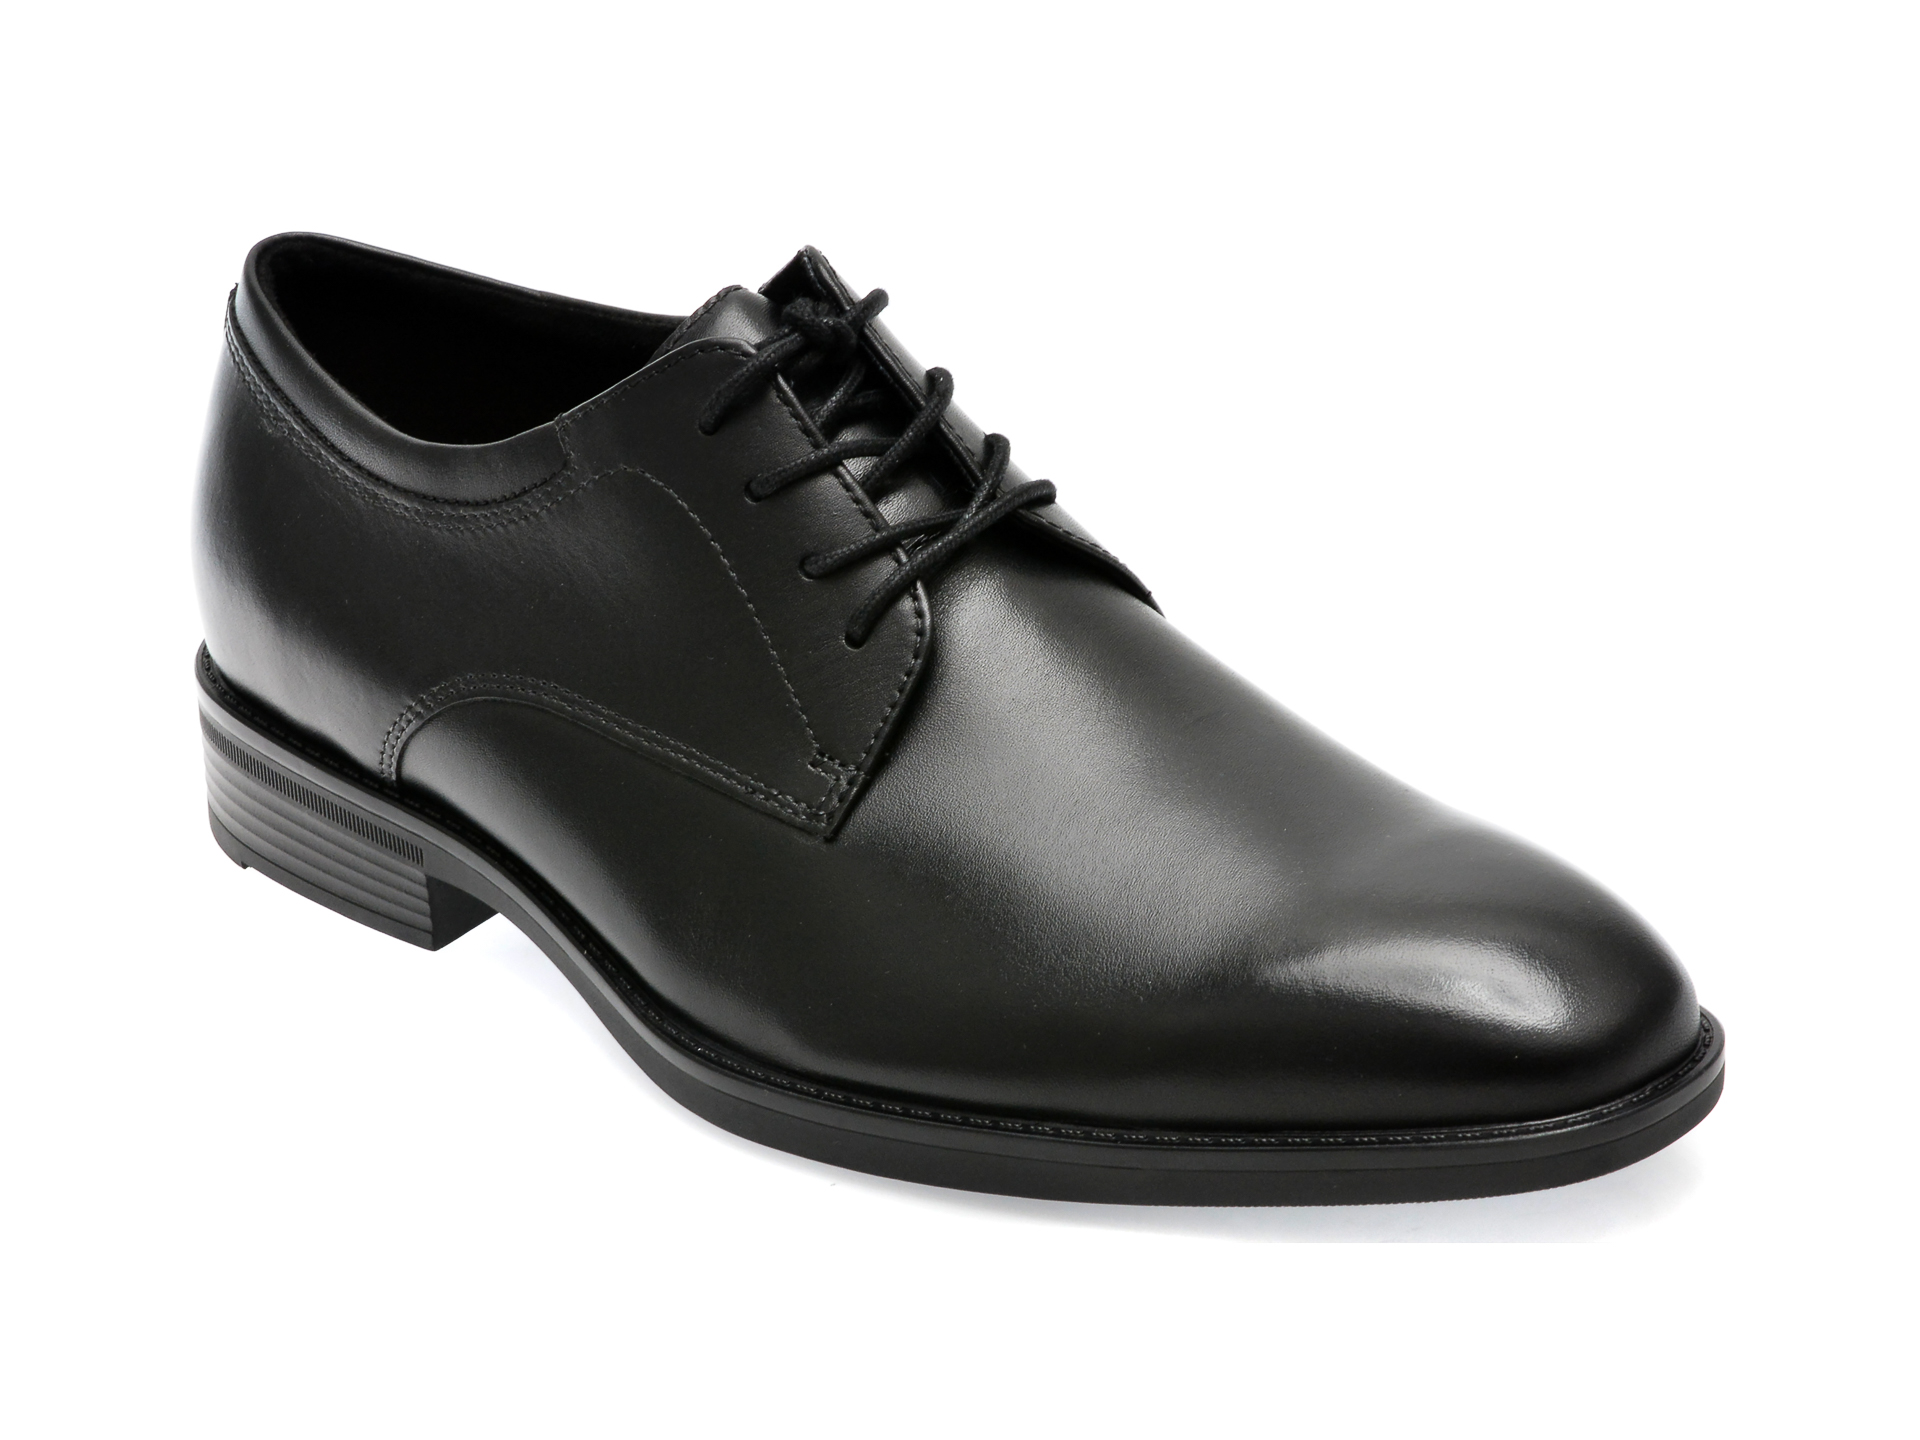 Pantofi ALDO negri, KEAGAN001, din piele naturala /barbati/pantofi